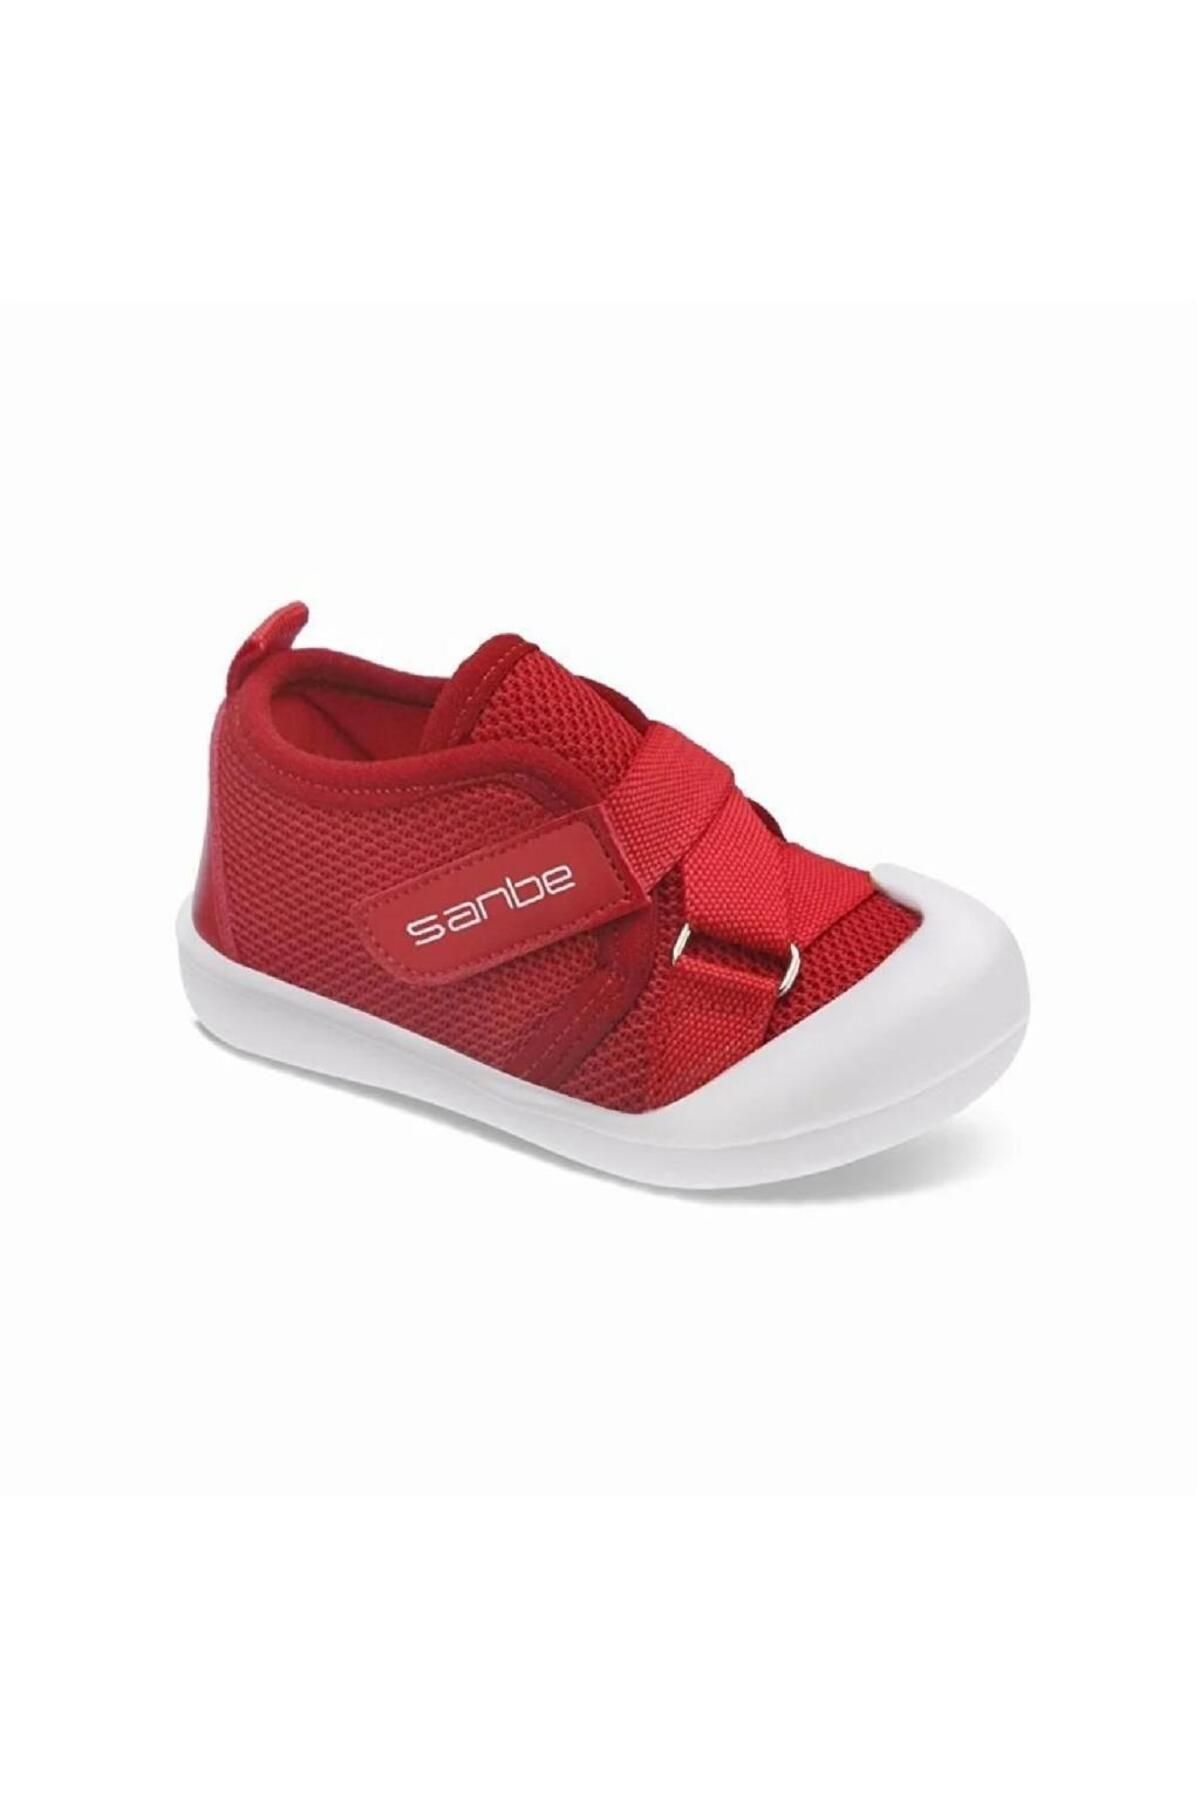 Sanbe 307v3901 Çocuk Spor Ayakkabı Kırmızı